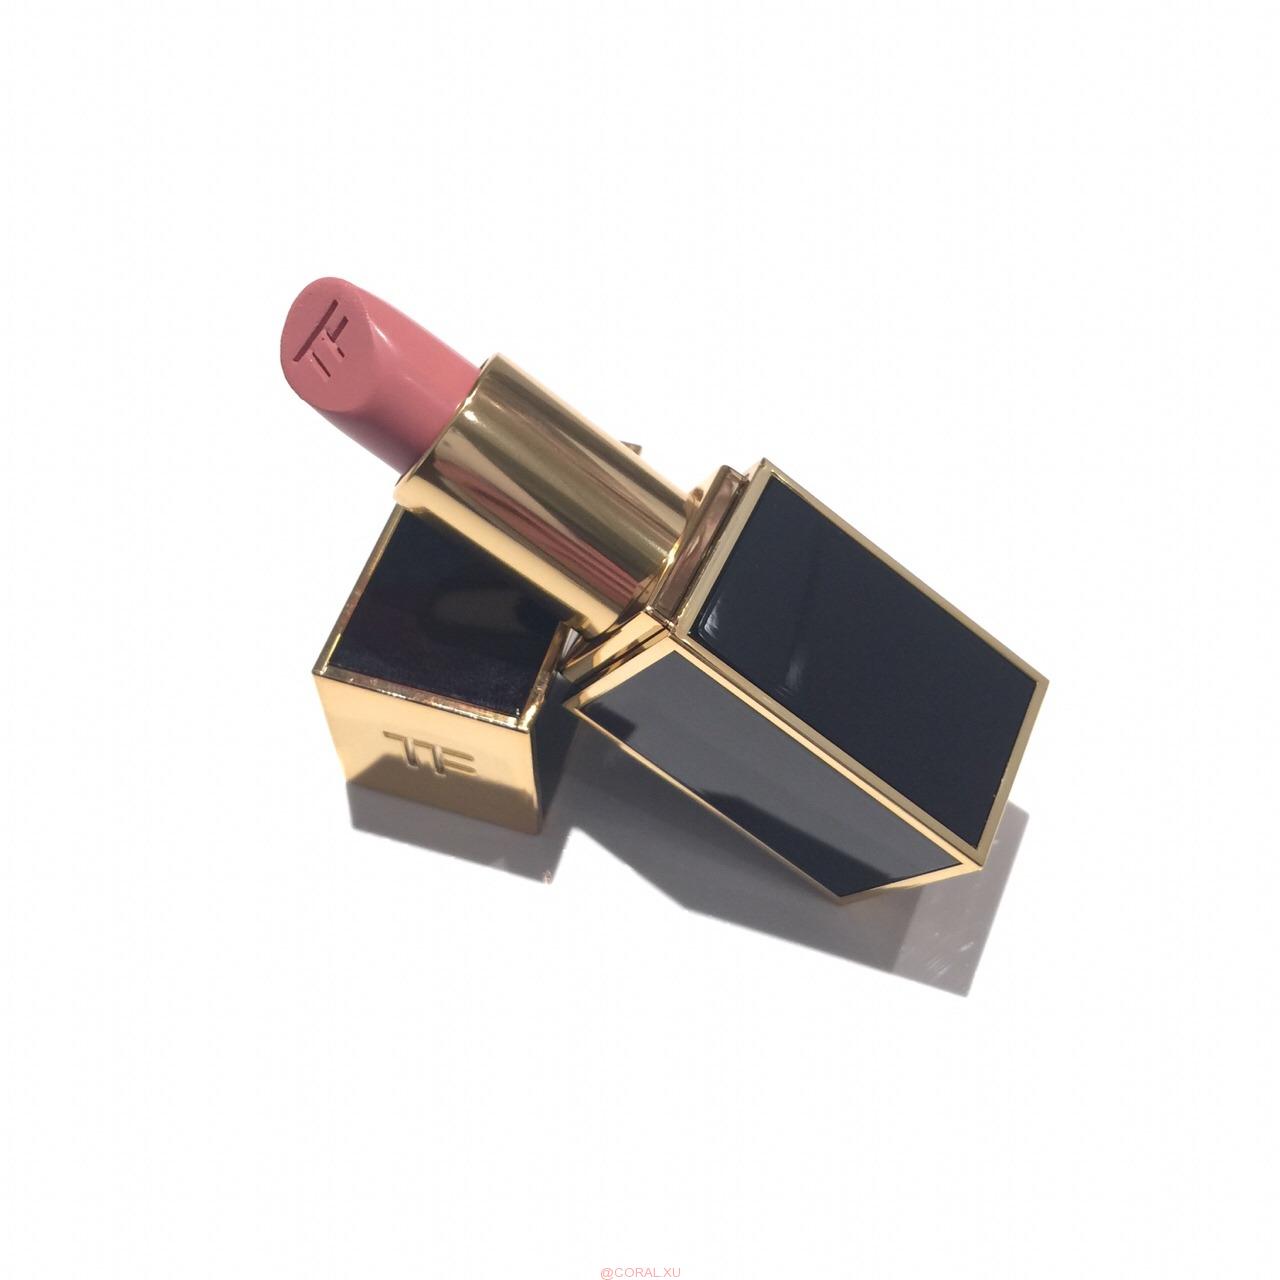 微信图片 20180911145530 - Tom Ford pink dusk lipstick 2018 review